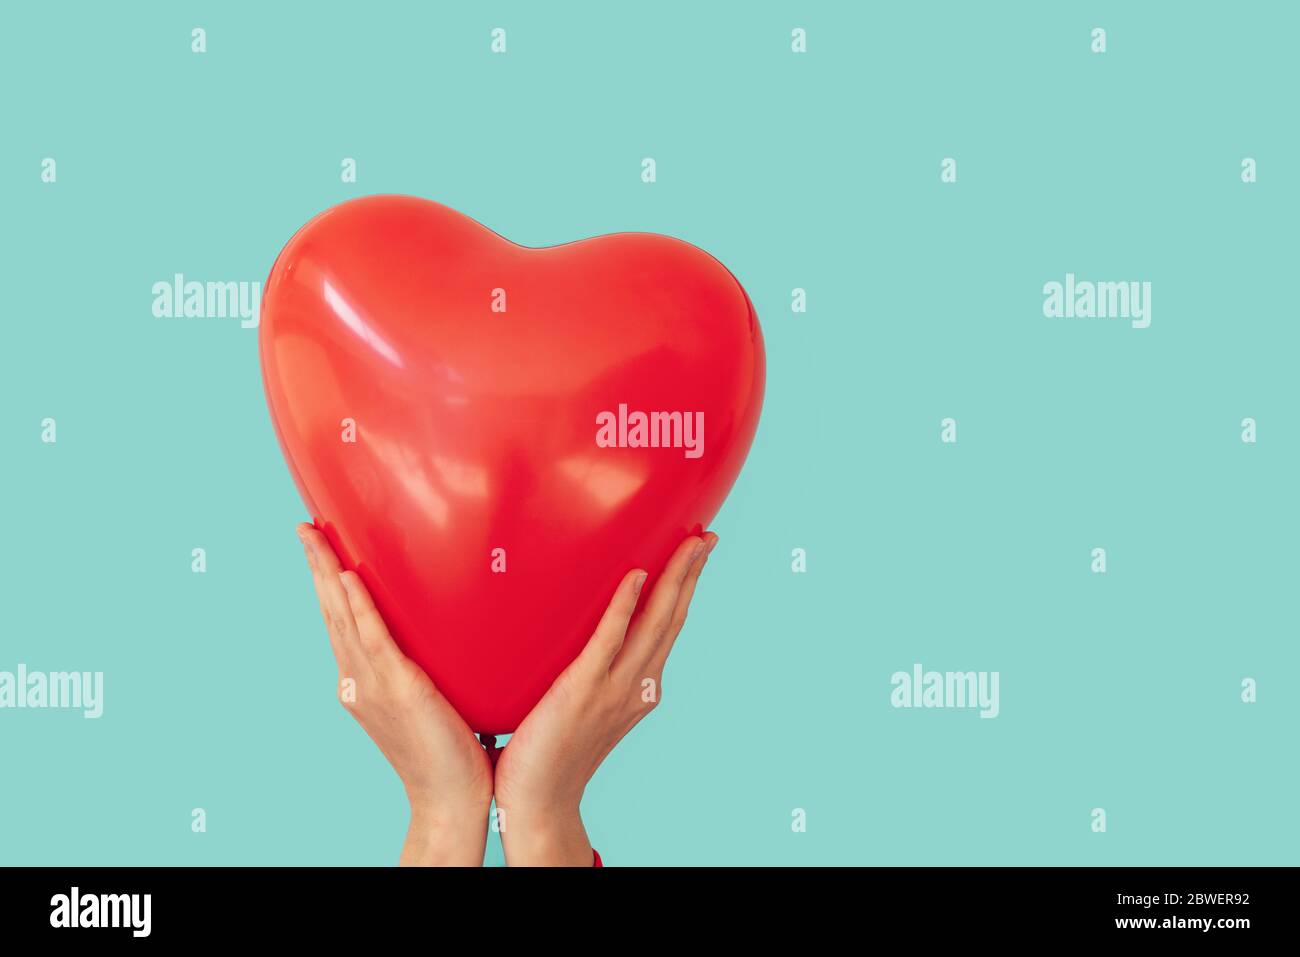 Femme porte un ballon en forme de cœur rouge sur un fond de mur turquoise. Concept Saint Valentin et romance Banque D'Images